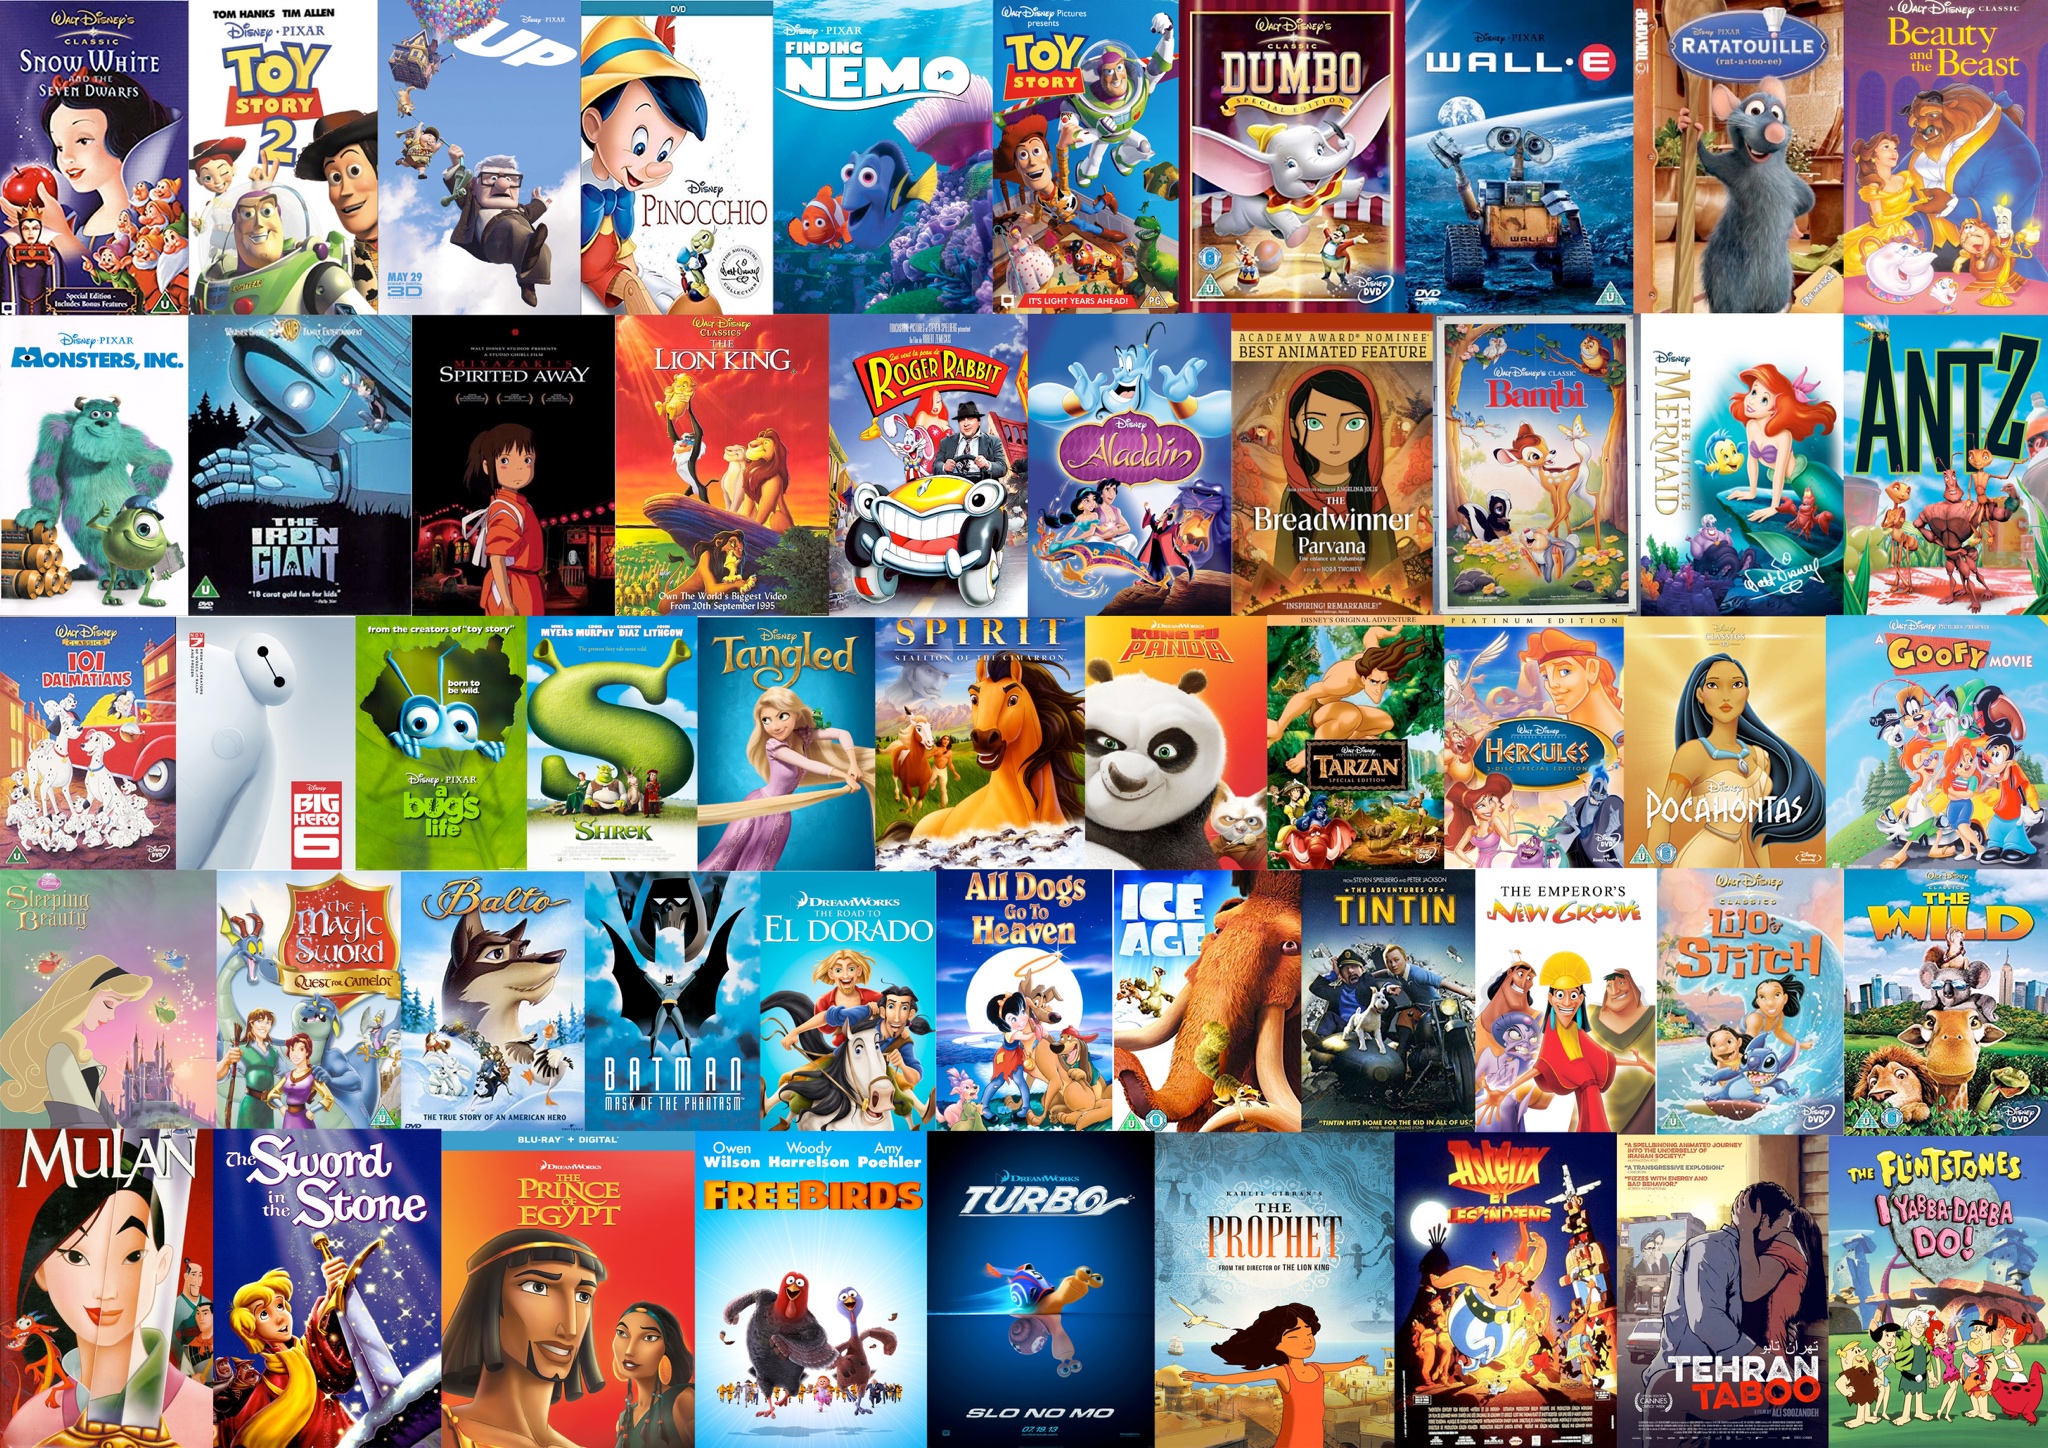 Liste over top 10 animationsfilm med de største indtægter i 2020